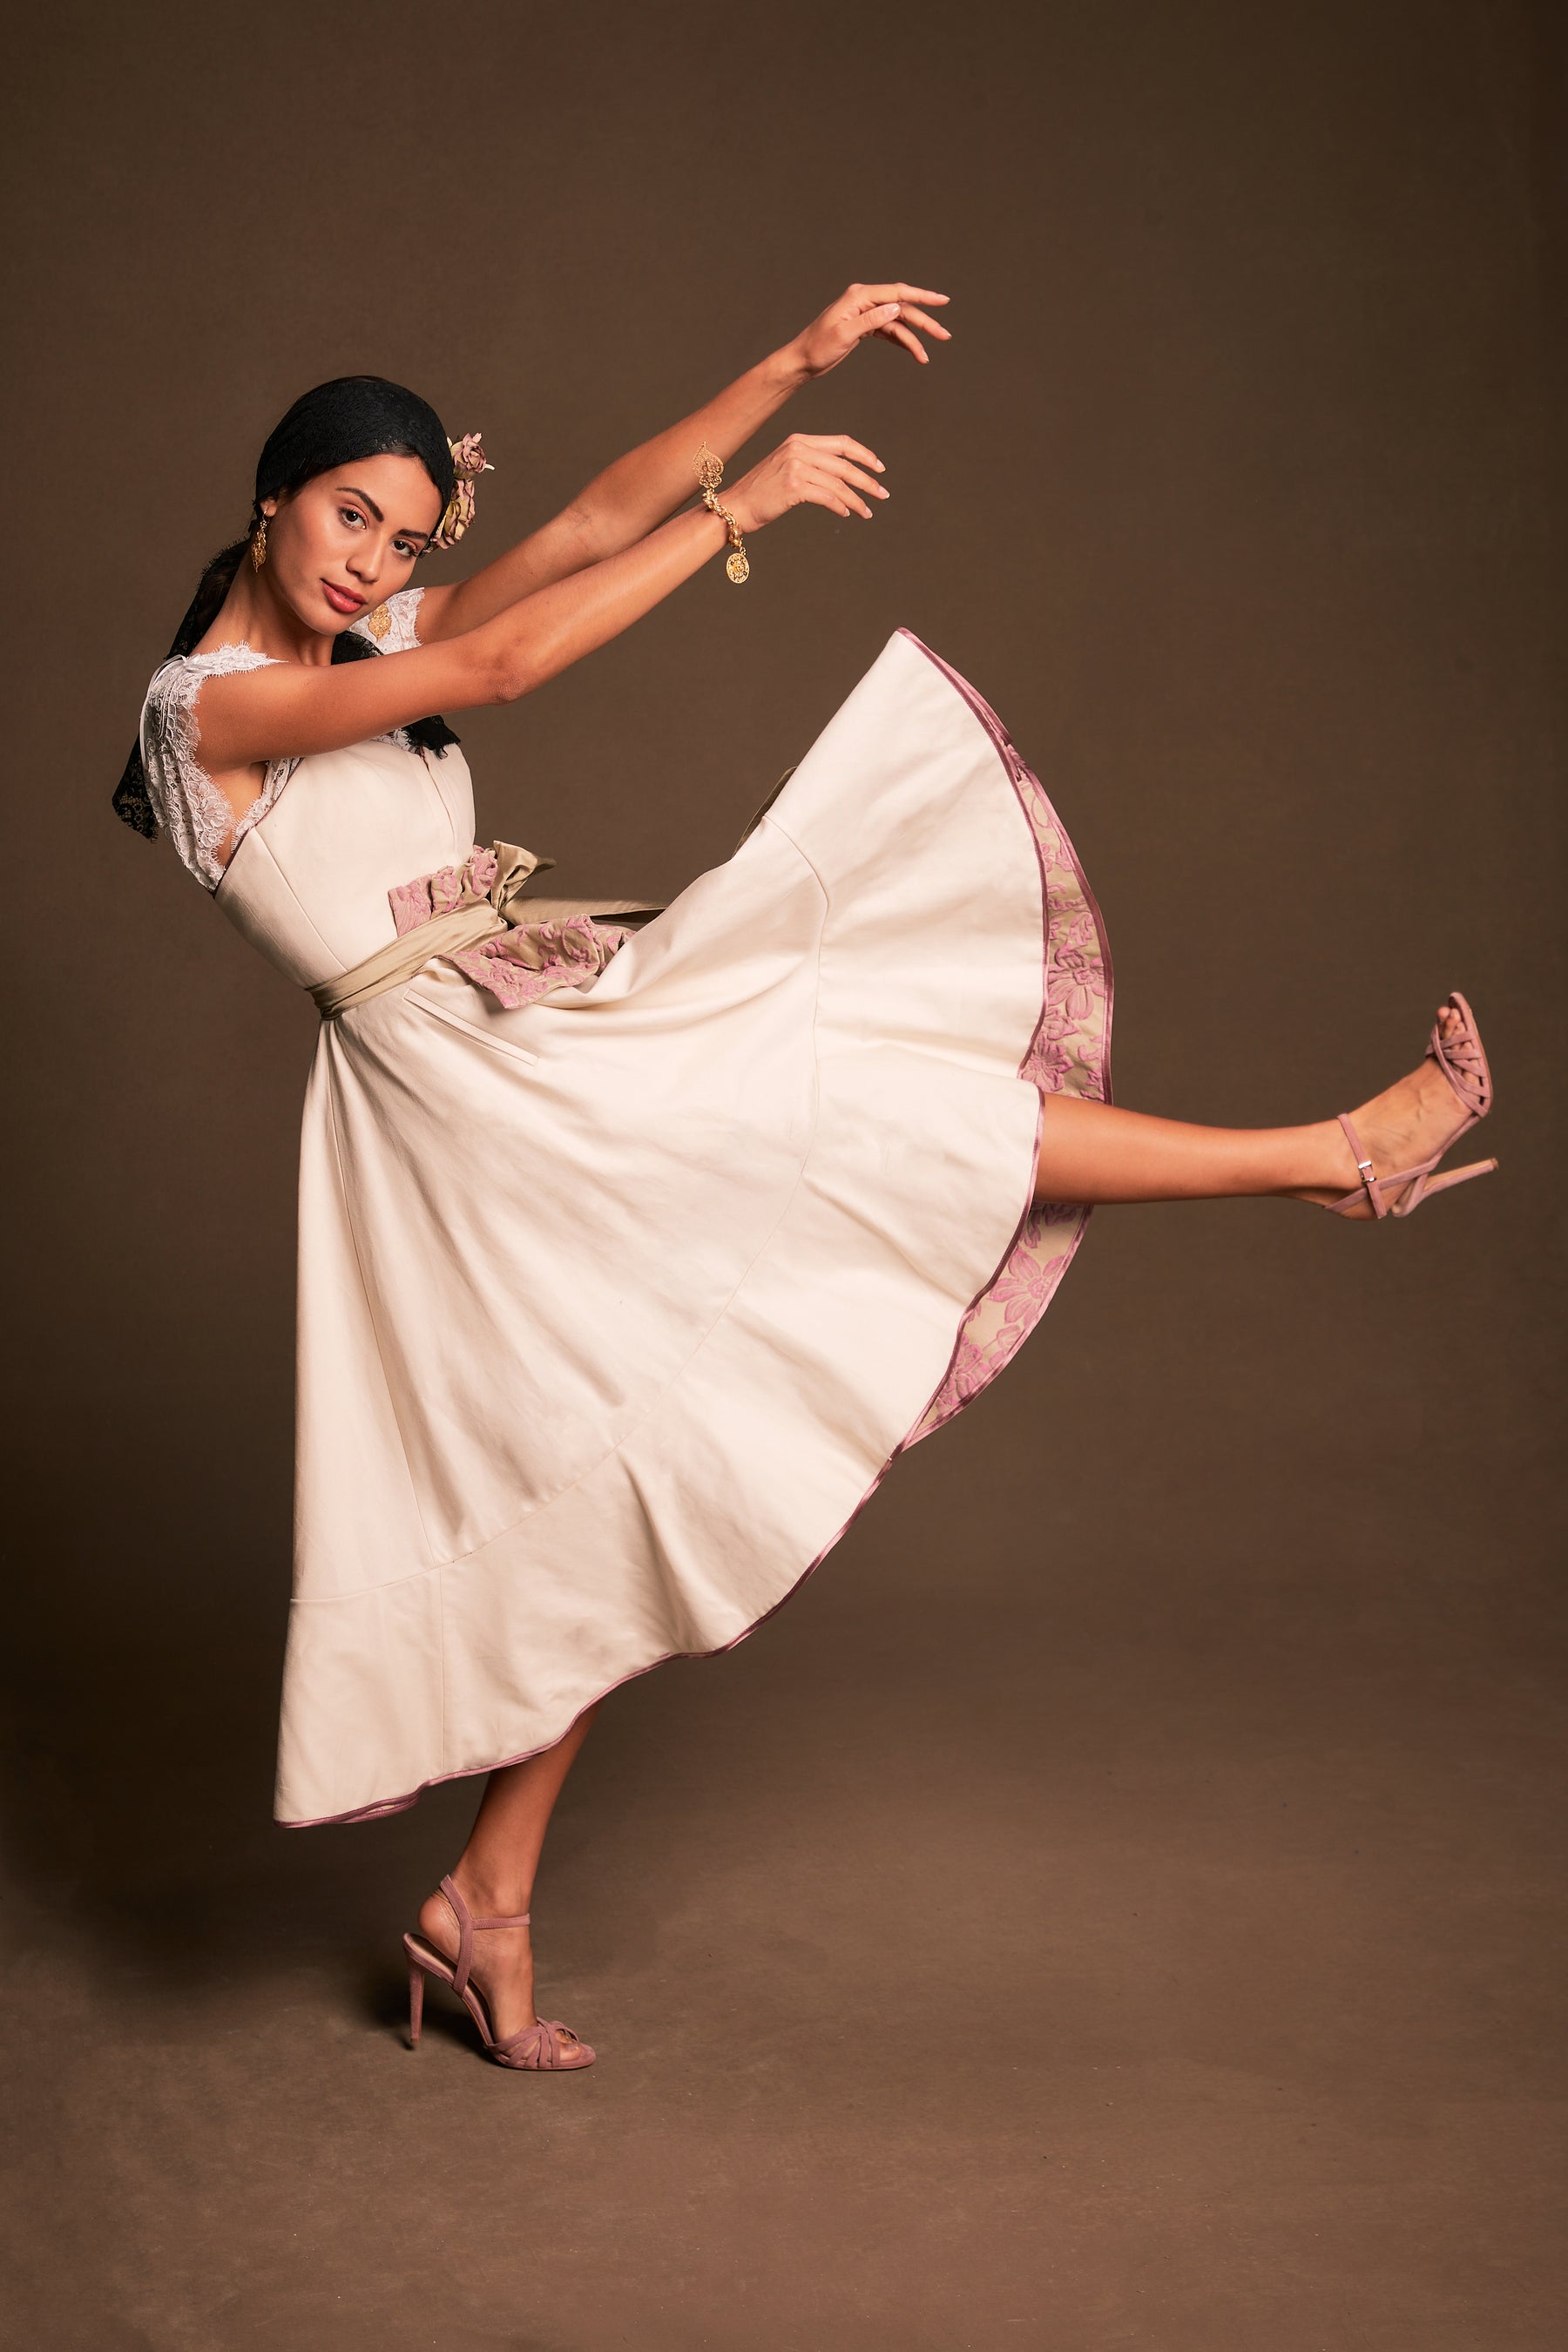 Modell Kleid Lourosa von Policarpo Trachten in hellem creme schwungvoll tanzender Bewegung präsentiert, Rockinnenseite aus floral strukturiert griffigen Jacquard in Rosetönen